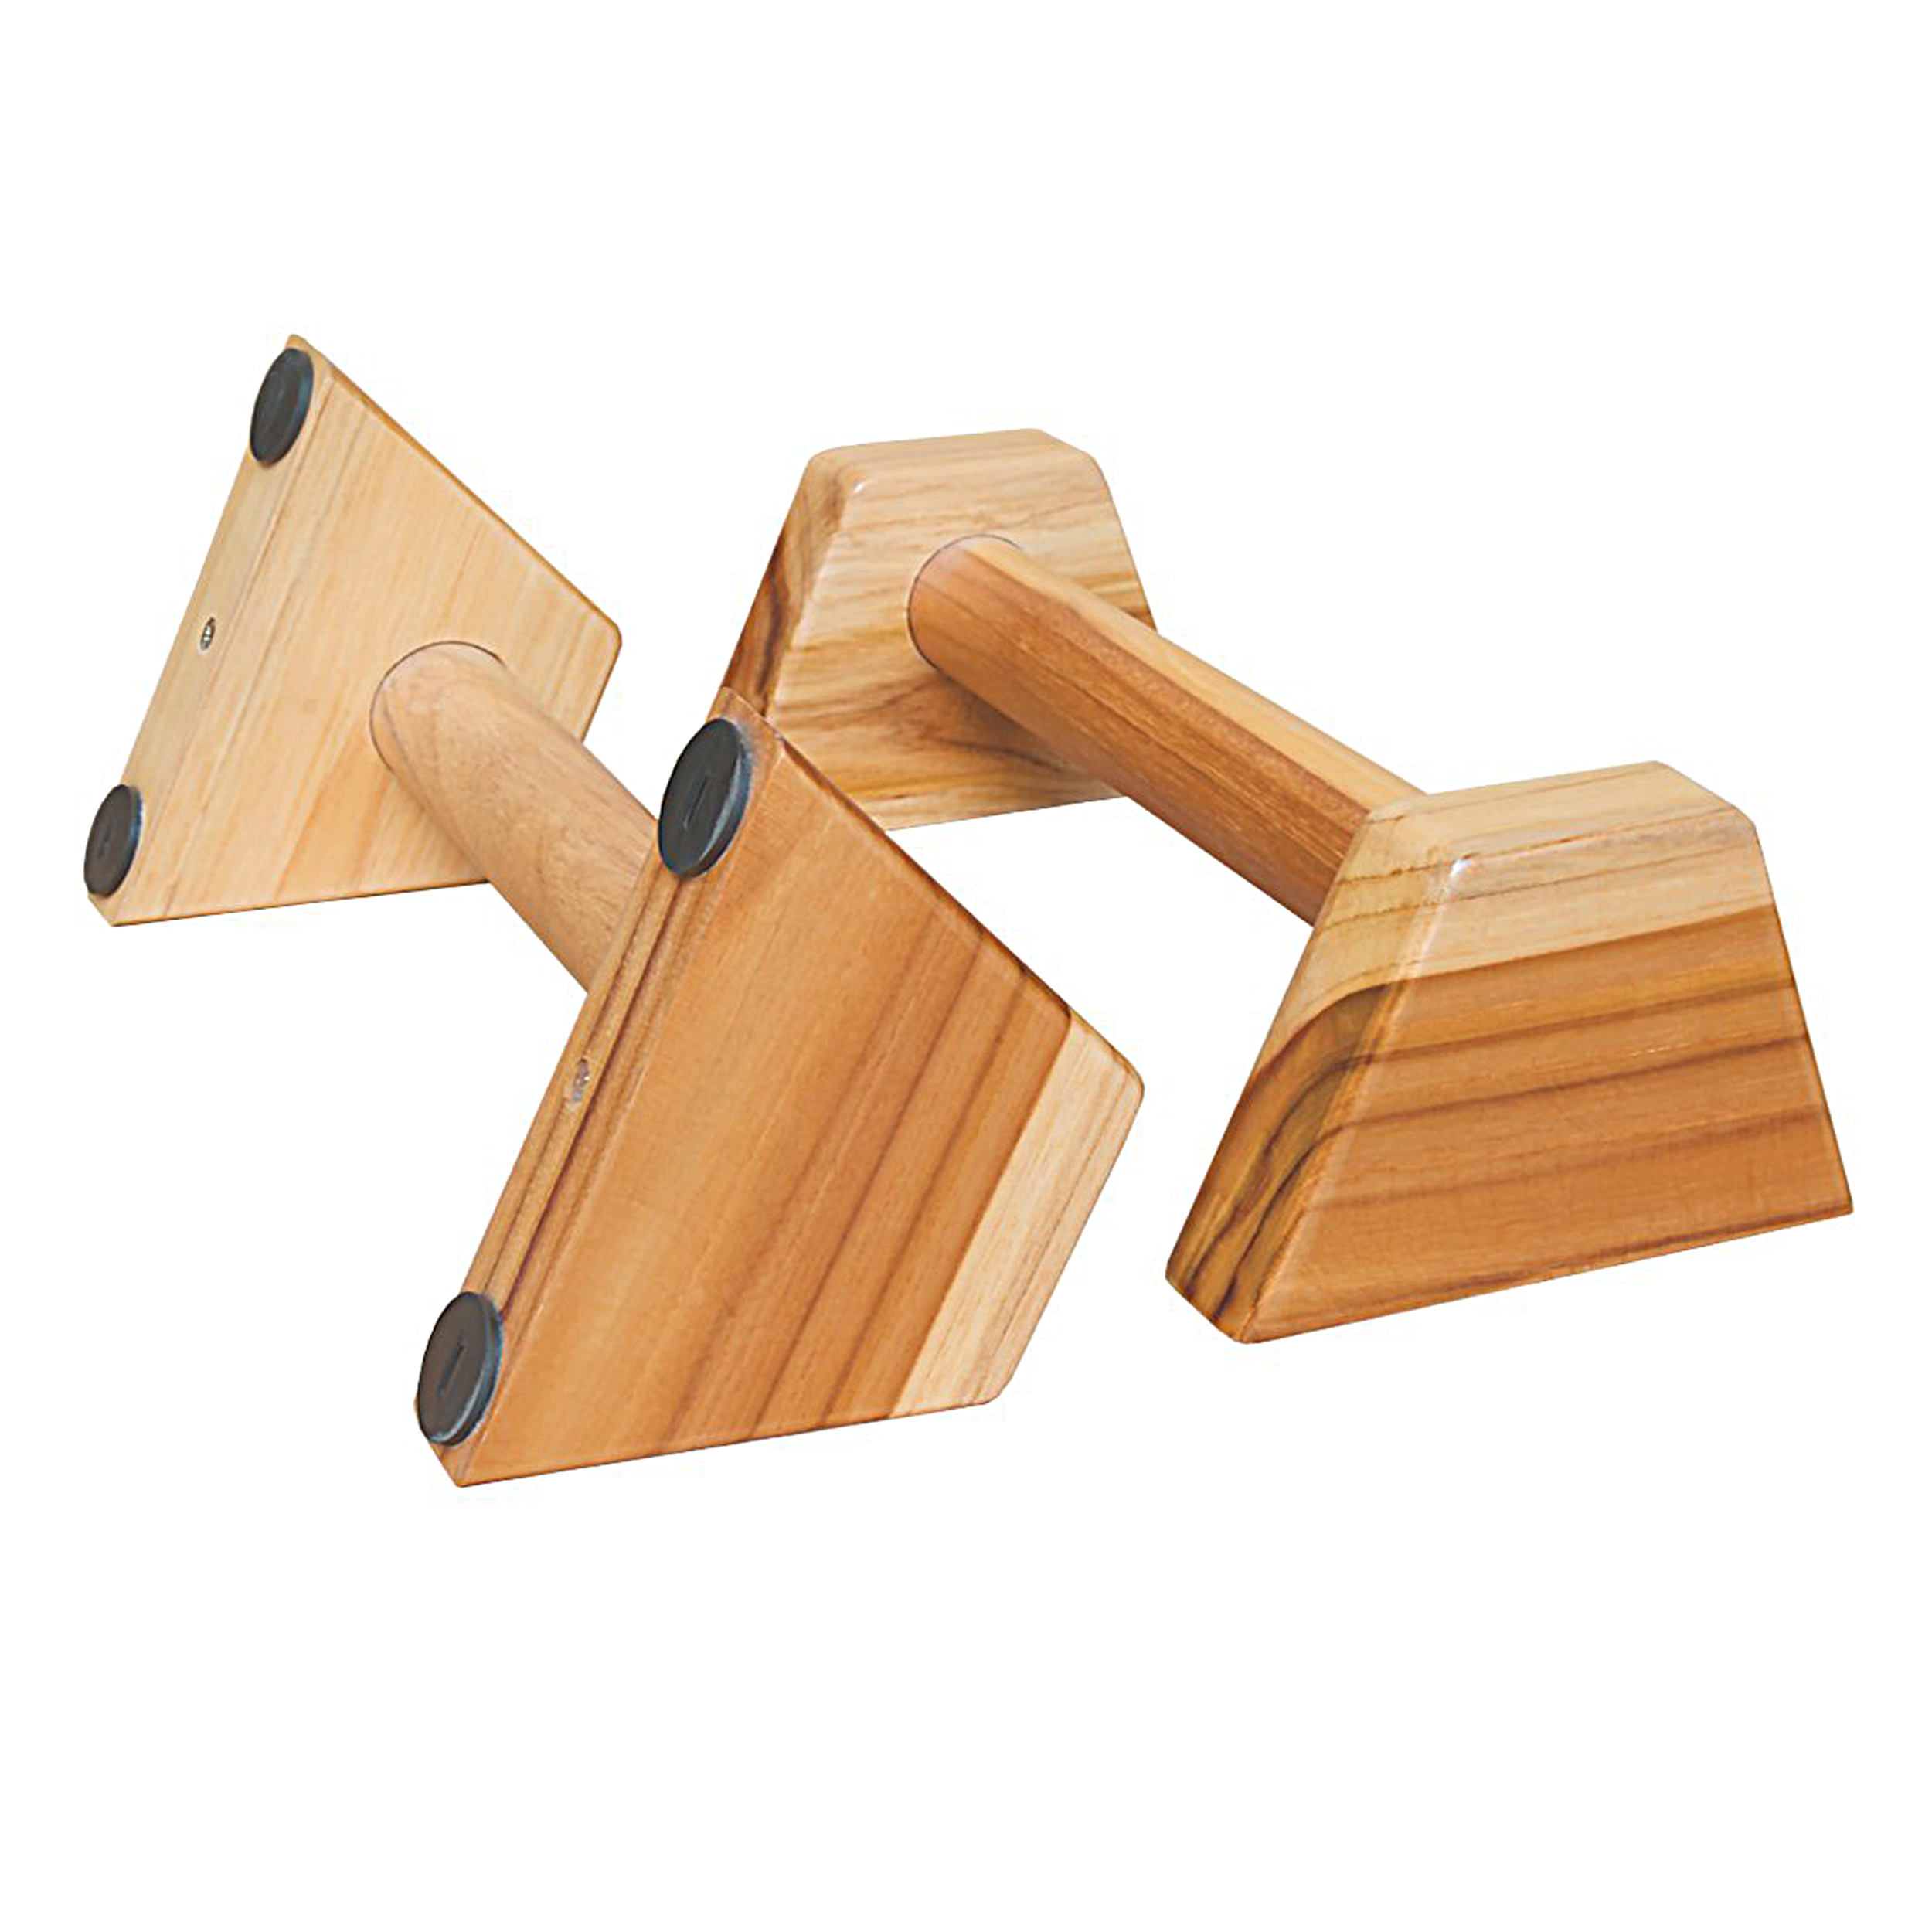 Dụng cụ chống đẩy, hít đất bằng gỗ - Parallettes Handstand PAH-01A